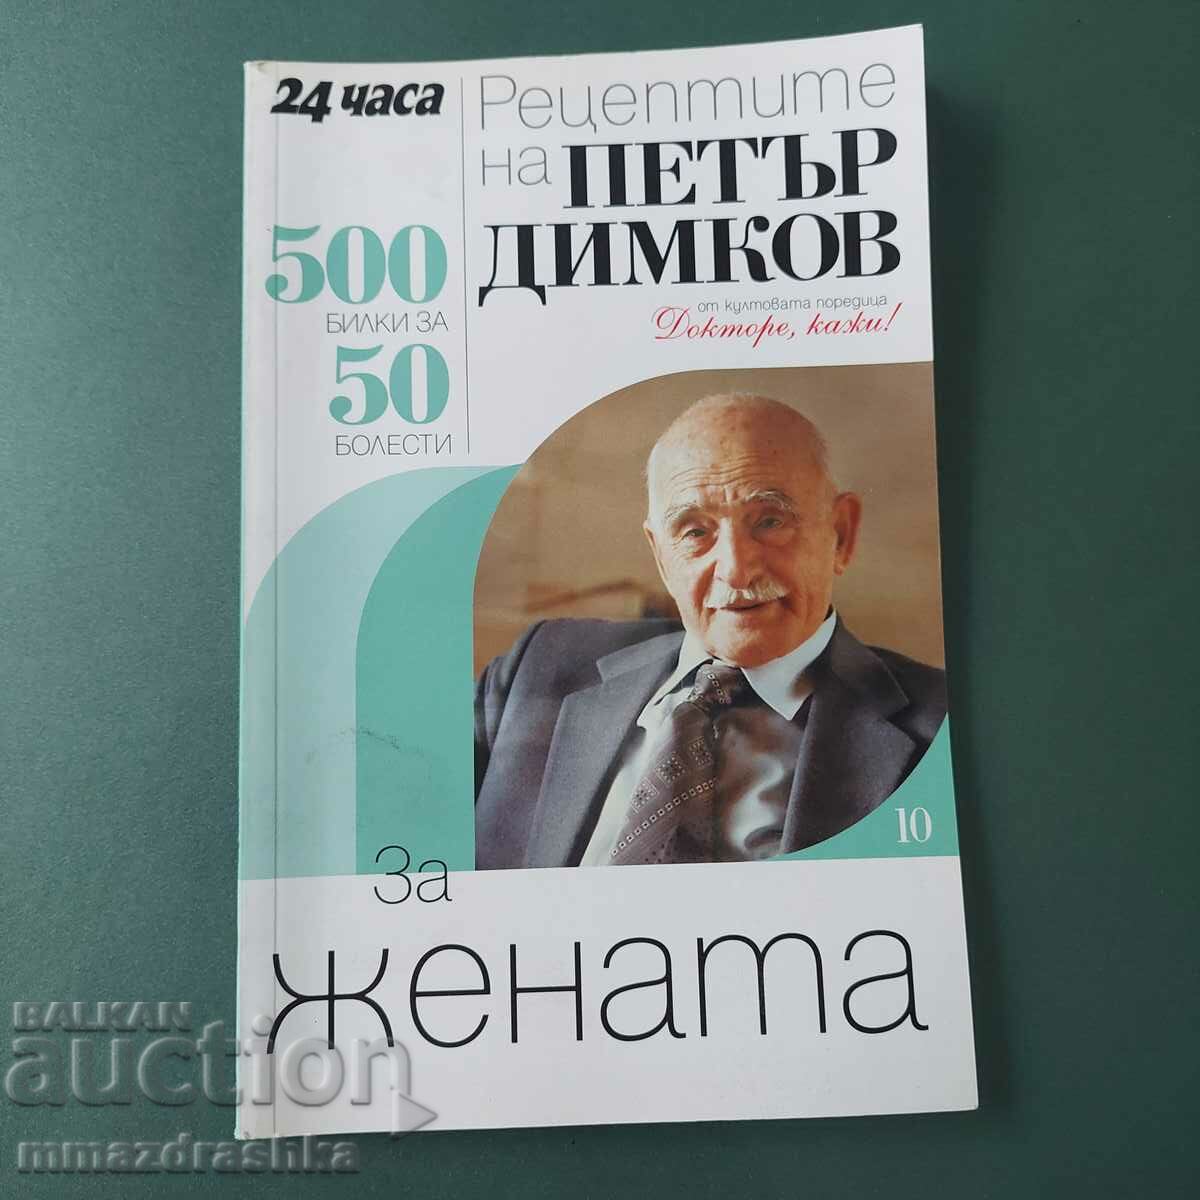 500 recipes for women, Petar Dimkov